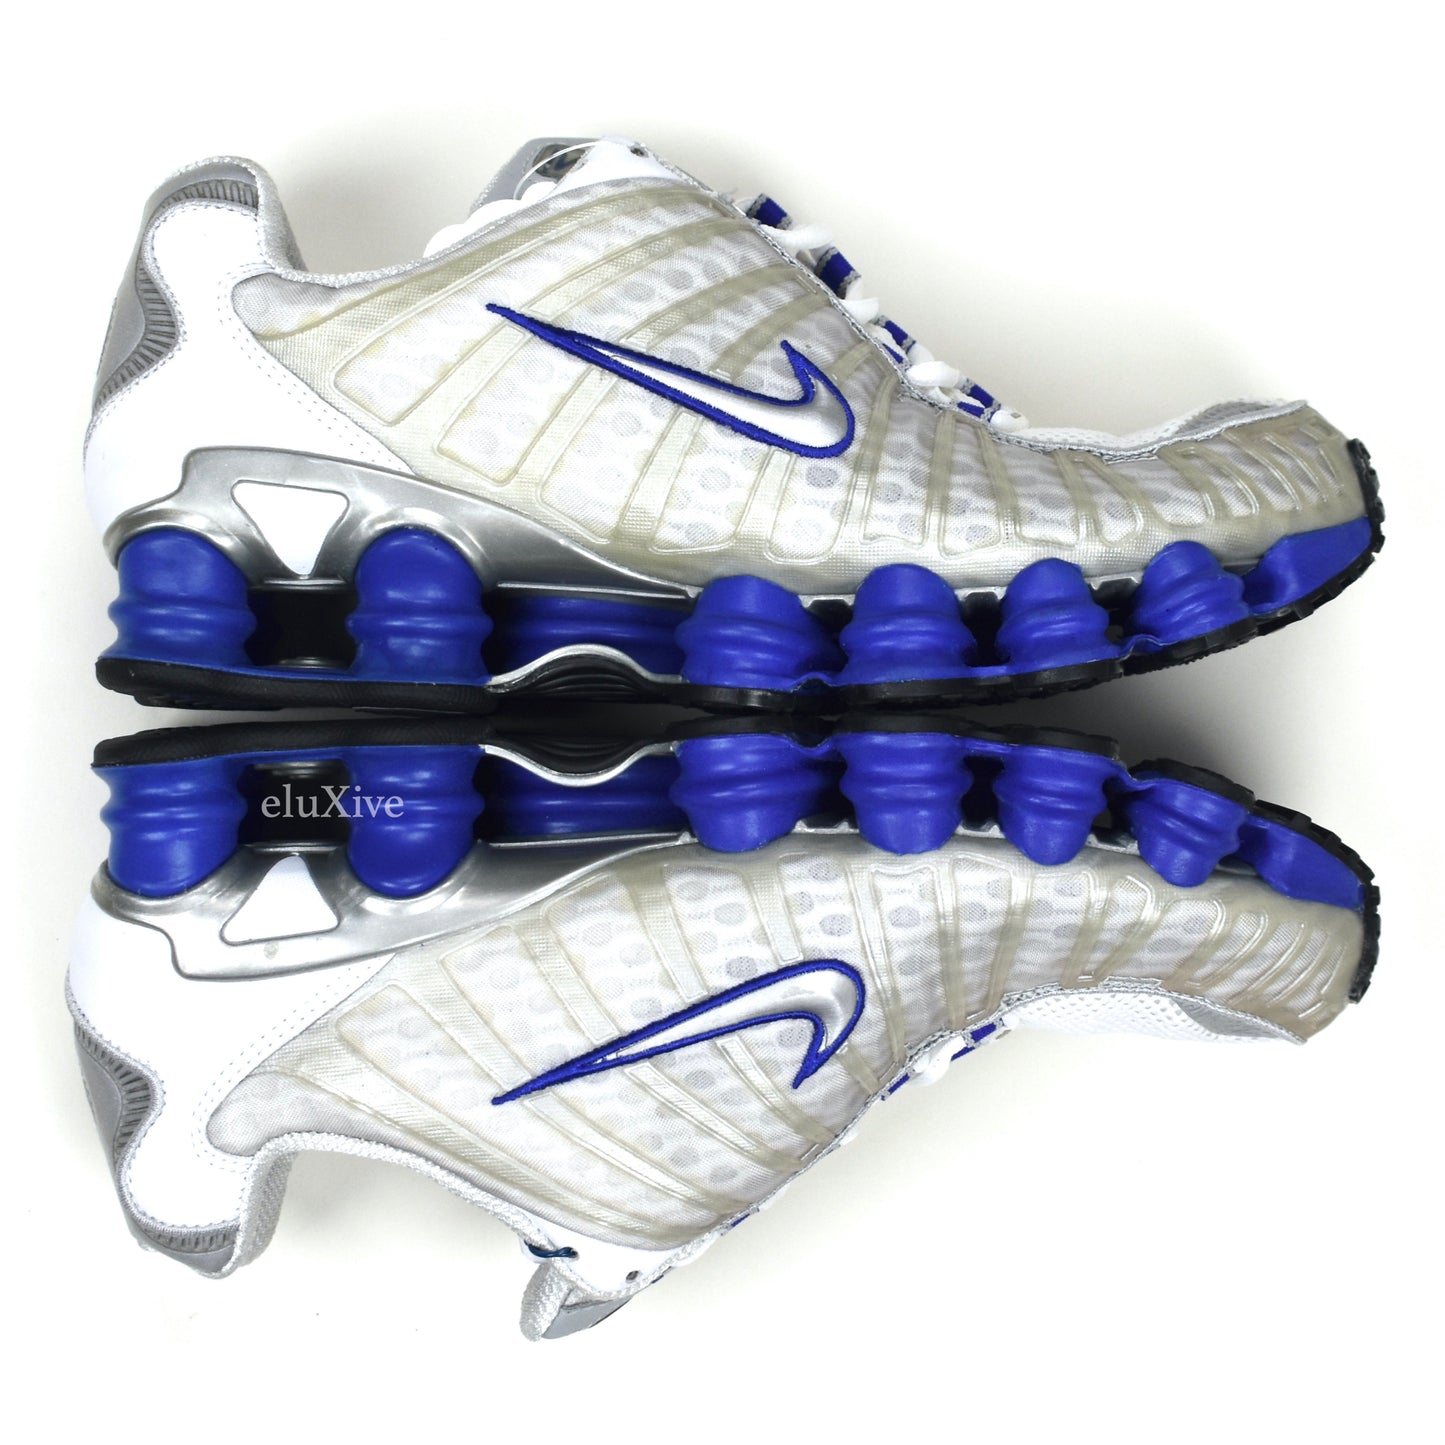 Nike - Shox TL OG White / Silver / Sport Royal Blue (2003)